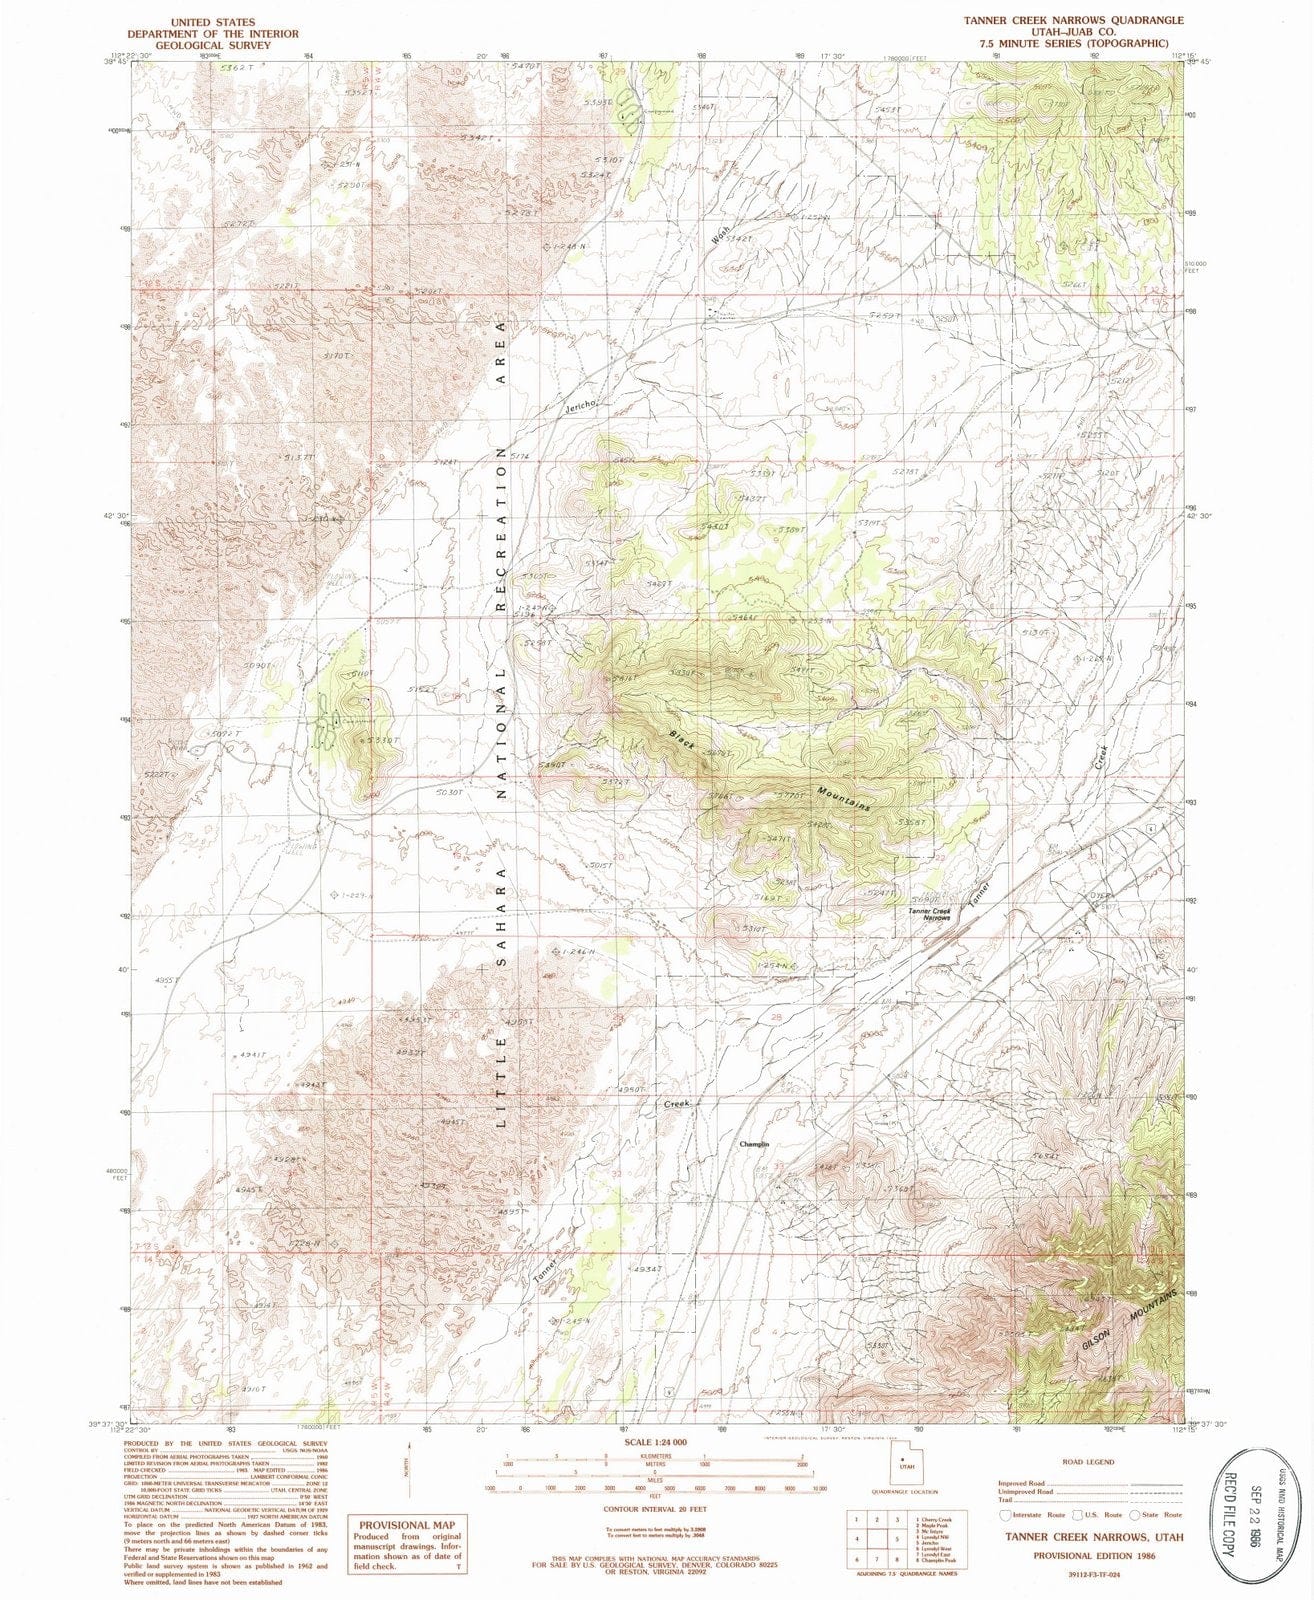 1986 Tanner Creek Narrows, UT - Utah - USGS Topographic Map